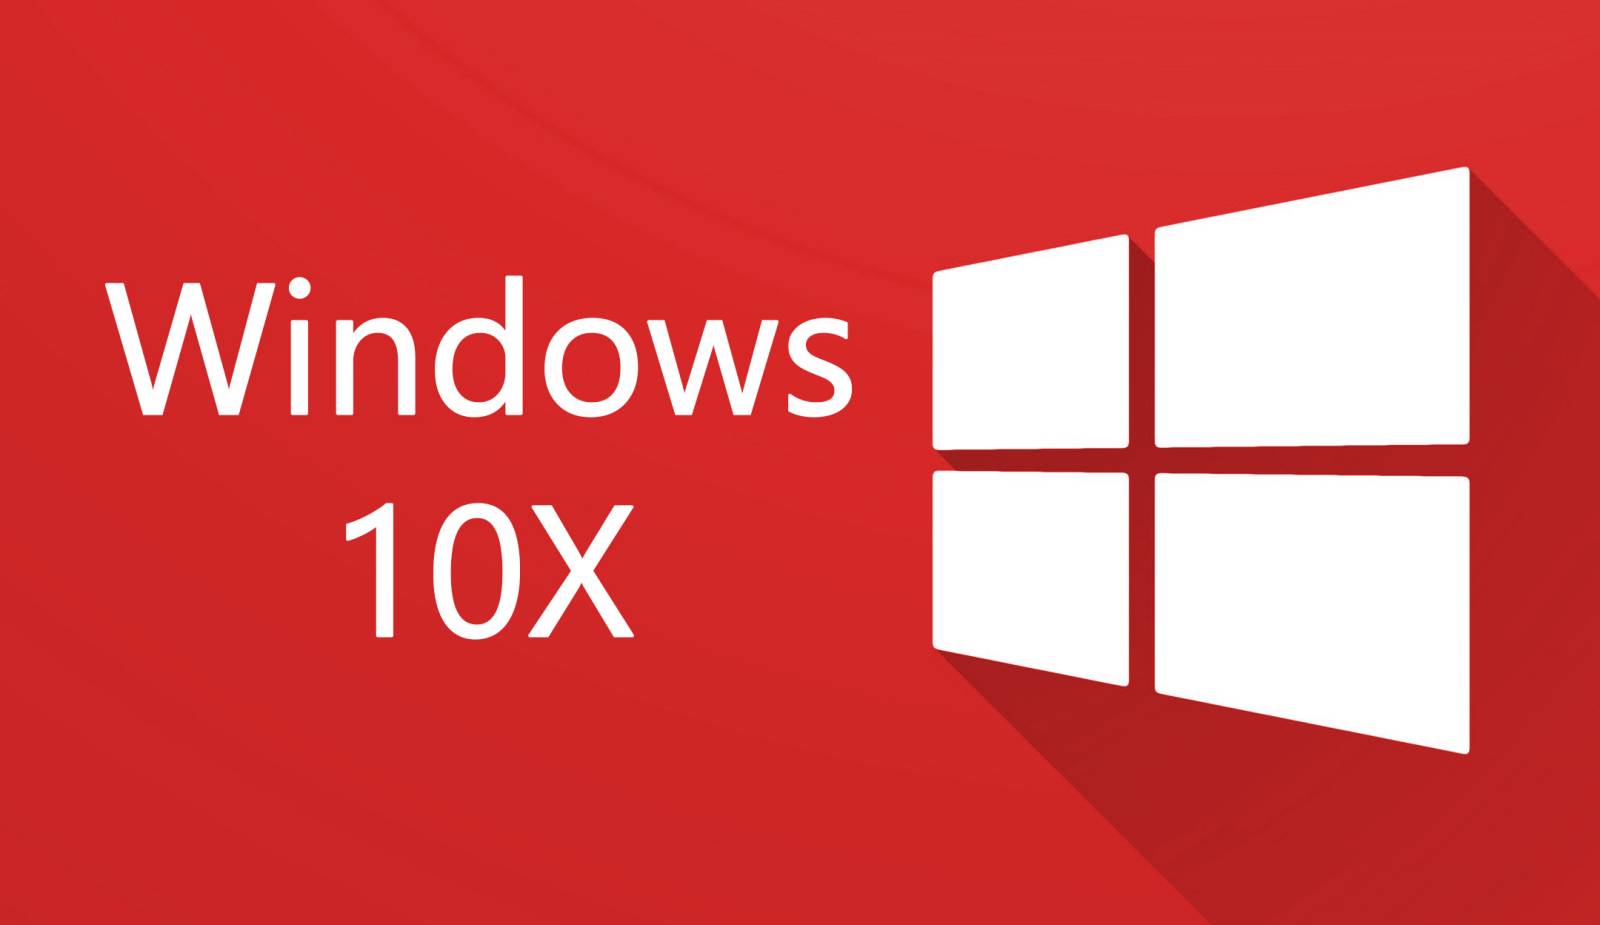 Windows 10X laptop